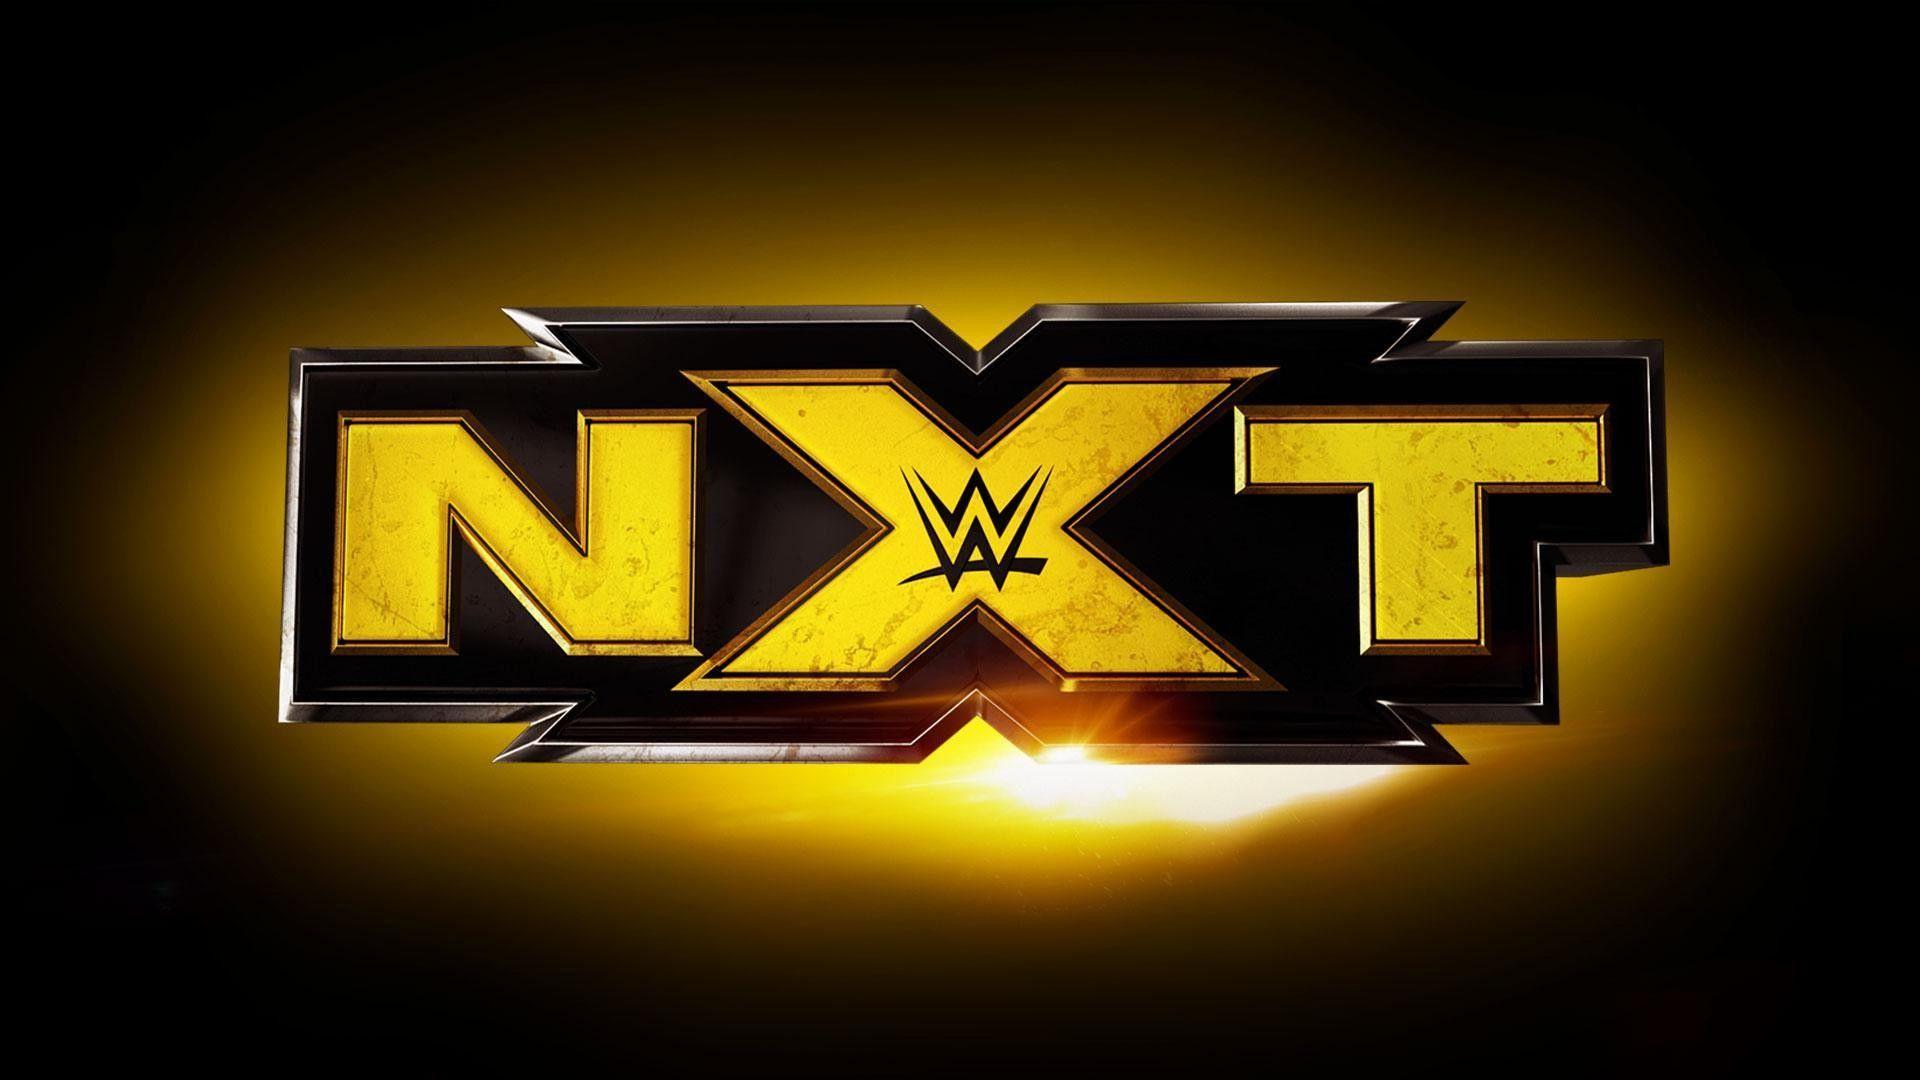 Wallpaper NXT WWE HD. Watch wrestling, Wwe, Wwe news